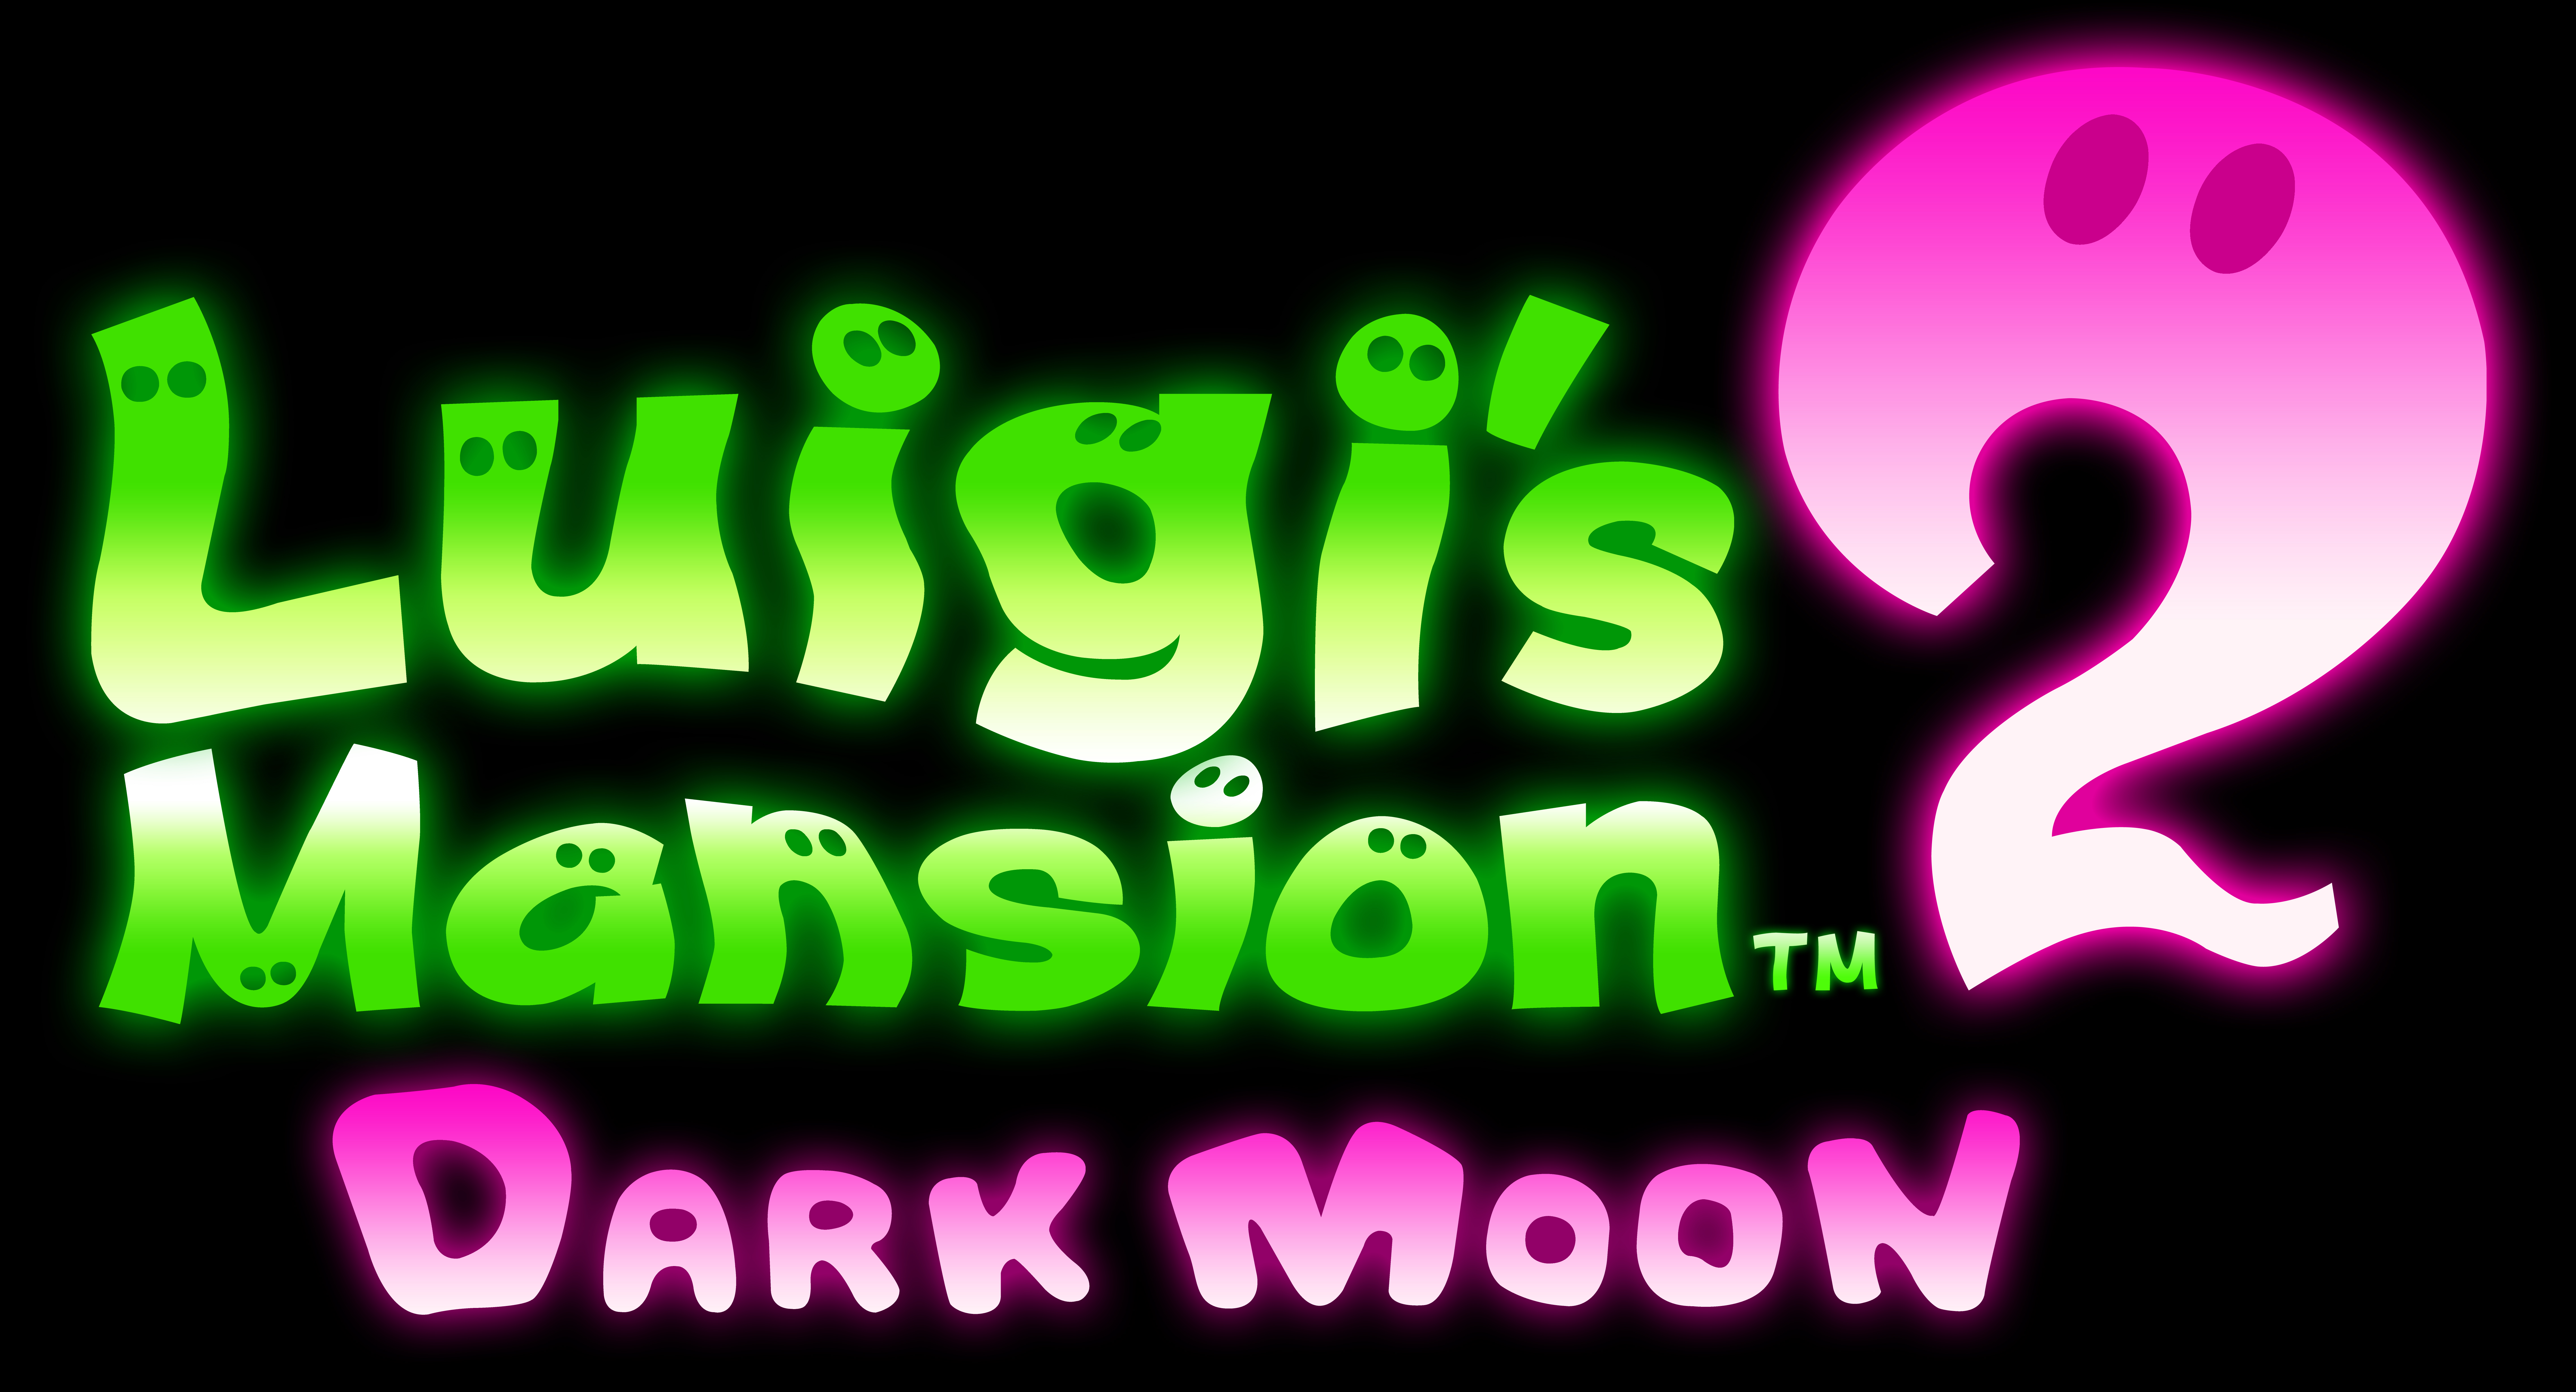 luigi mansion dark moon download